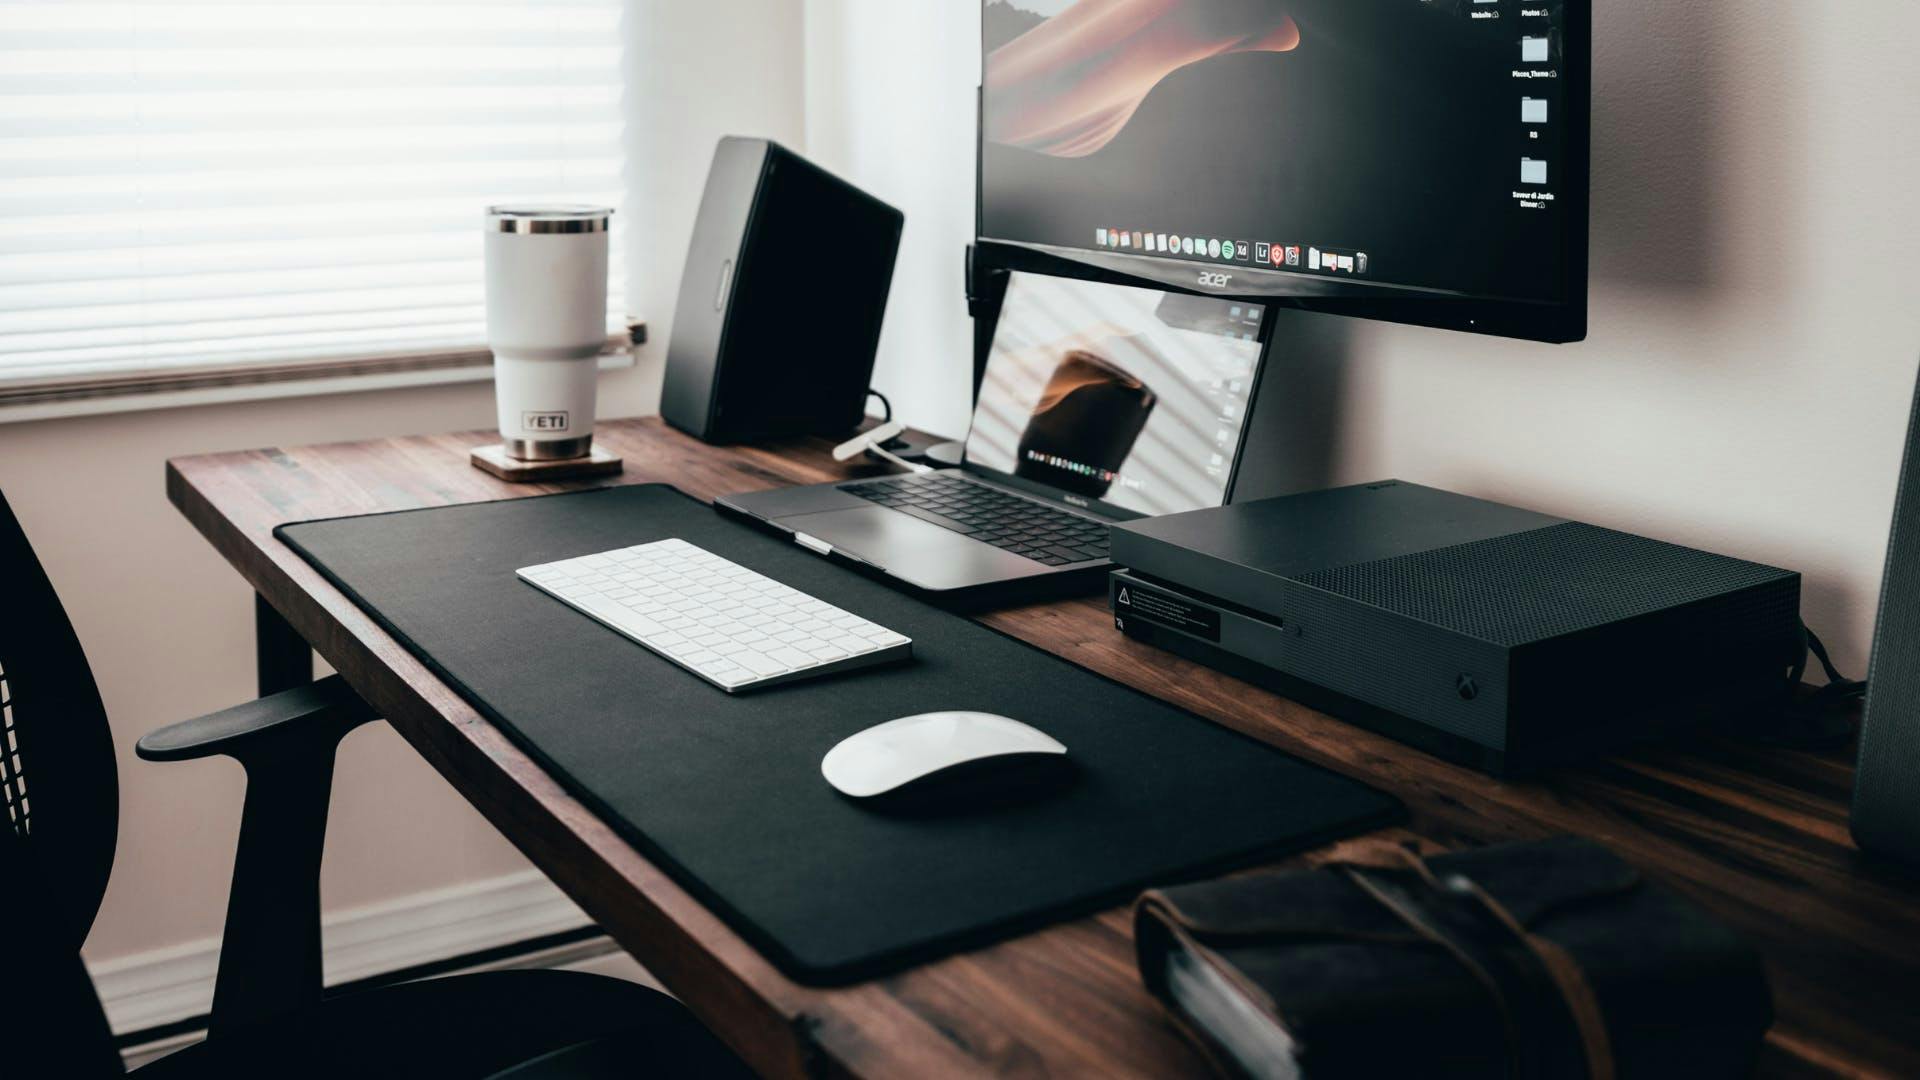 Auf einem büro-ähnlichen, minimalistischen Schreibtisch in dunklen Holztönen steht ein Laptop und eine Tastatur vor einem Fernseh-Monitor und Lautsprechern